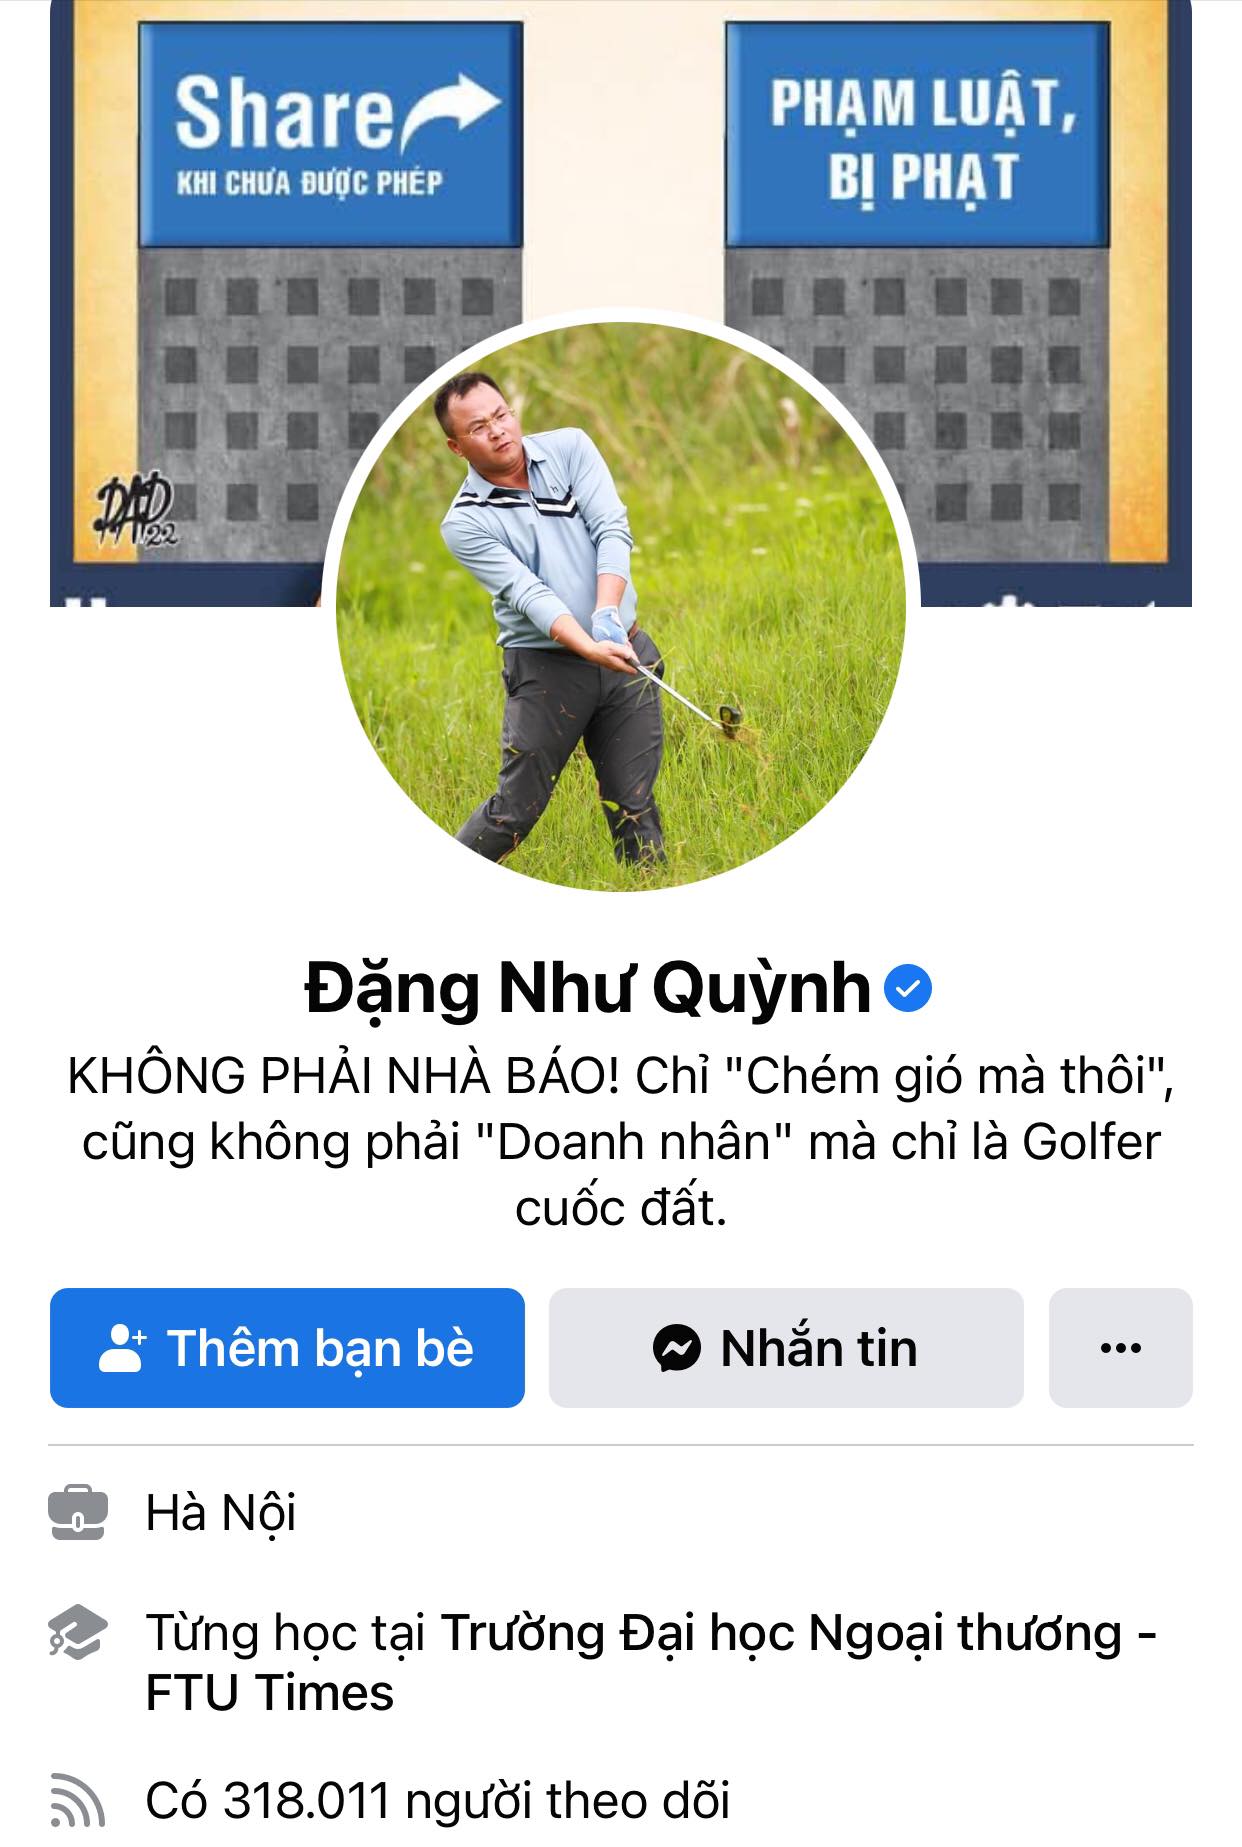 Facebooker Đặng Như Quỳnh là người nổi tiếng với hàng trăm nghìn người theo dõi. (Ảnh chụp màn hình facebook)